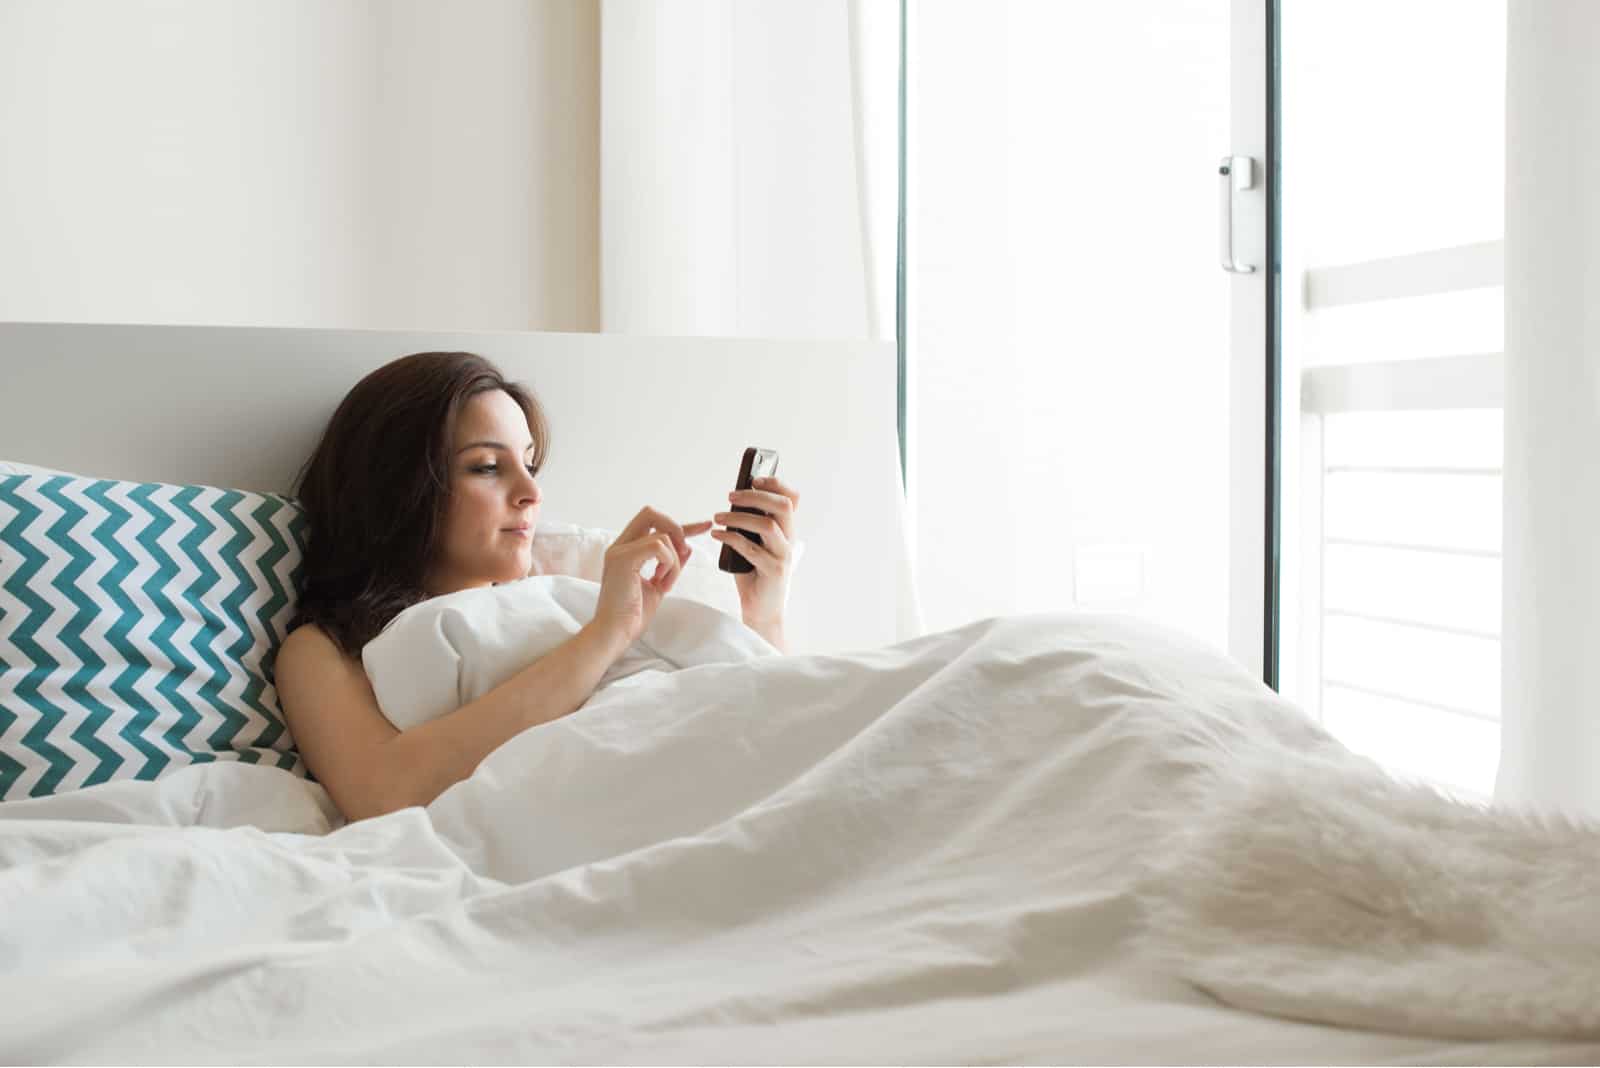 Femme au lit, vérification des applications sociales avec smartphone